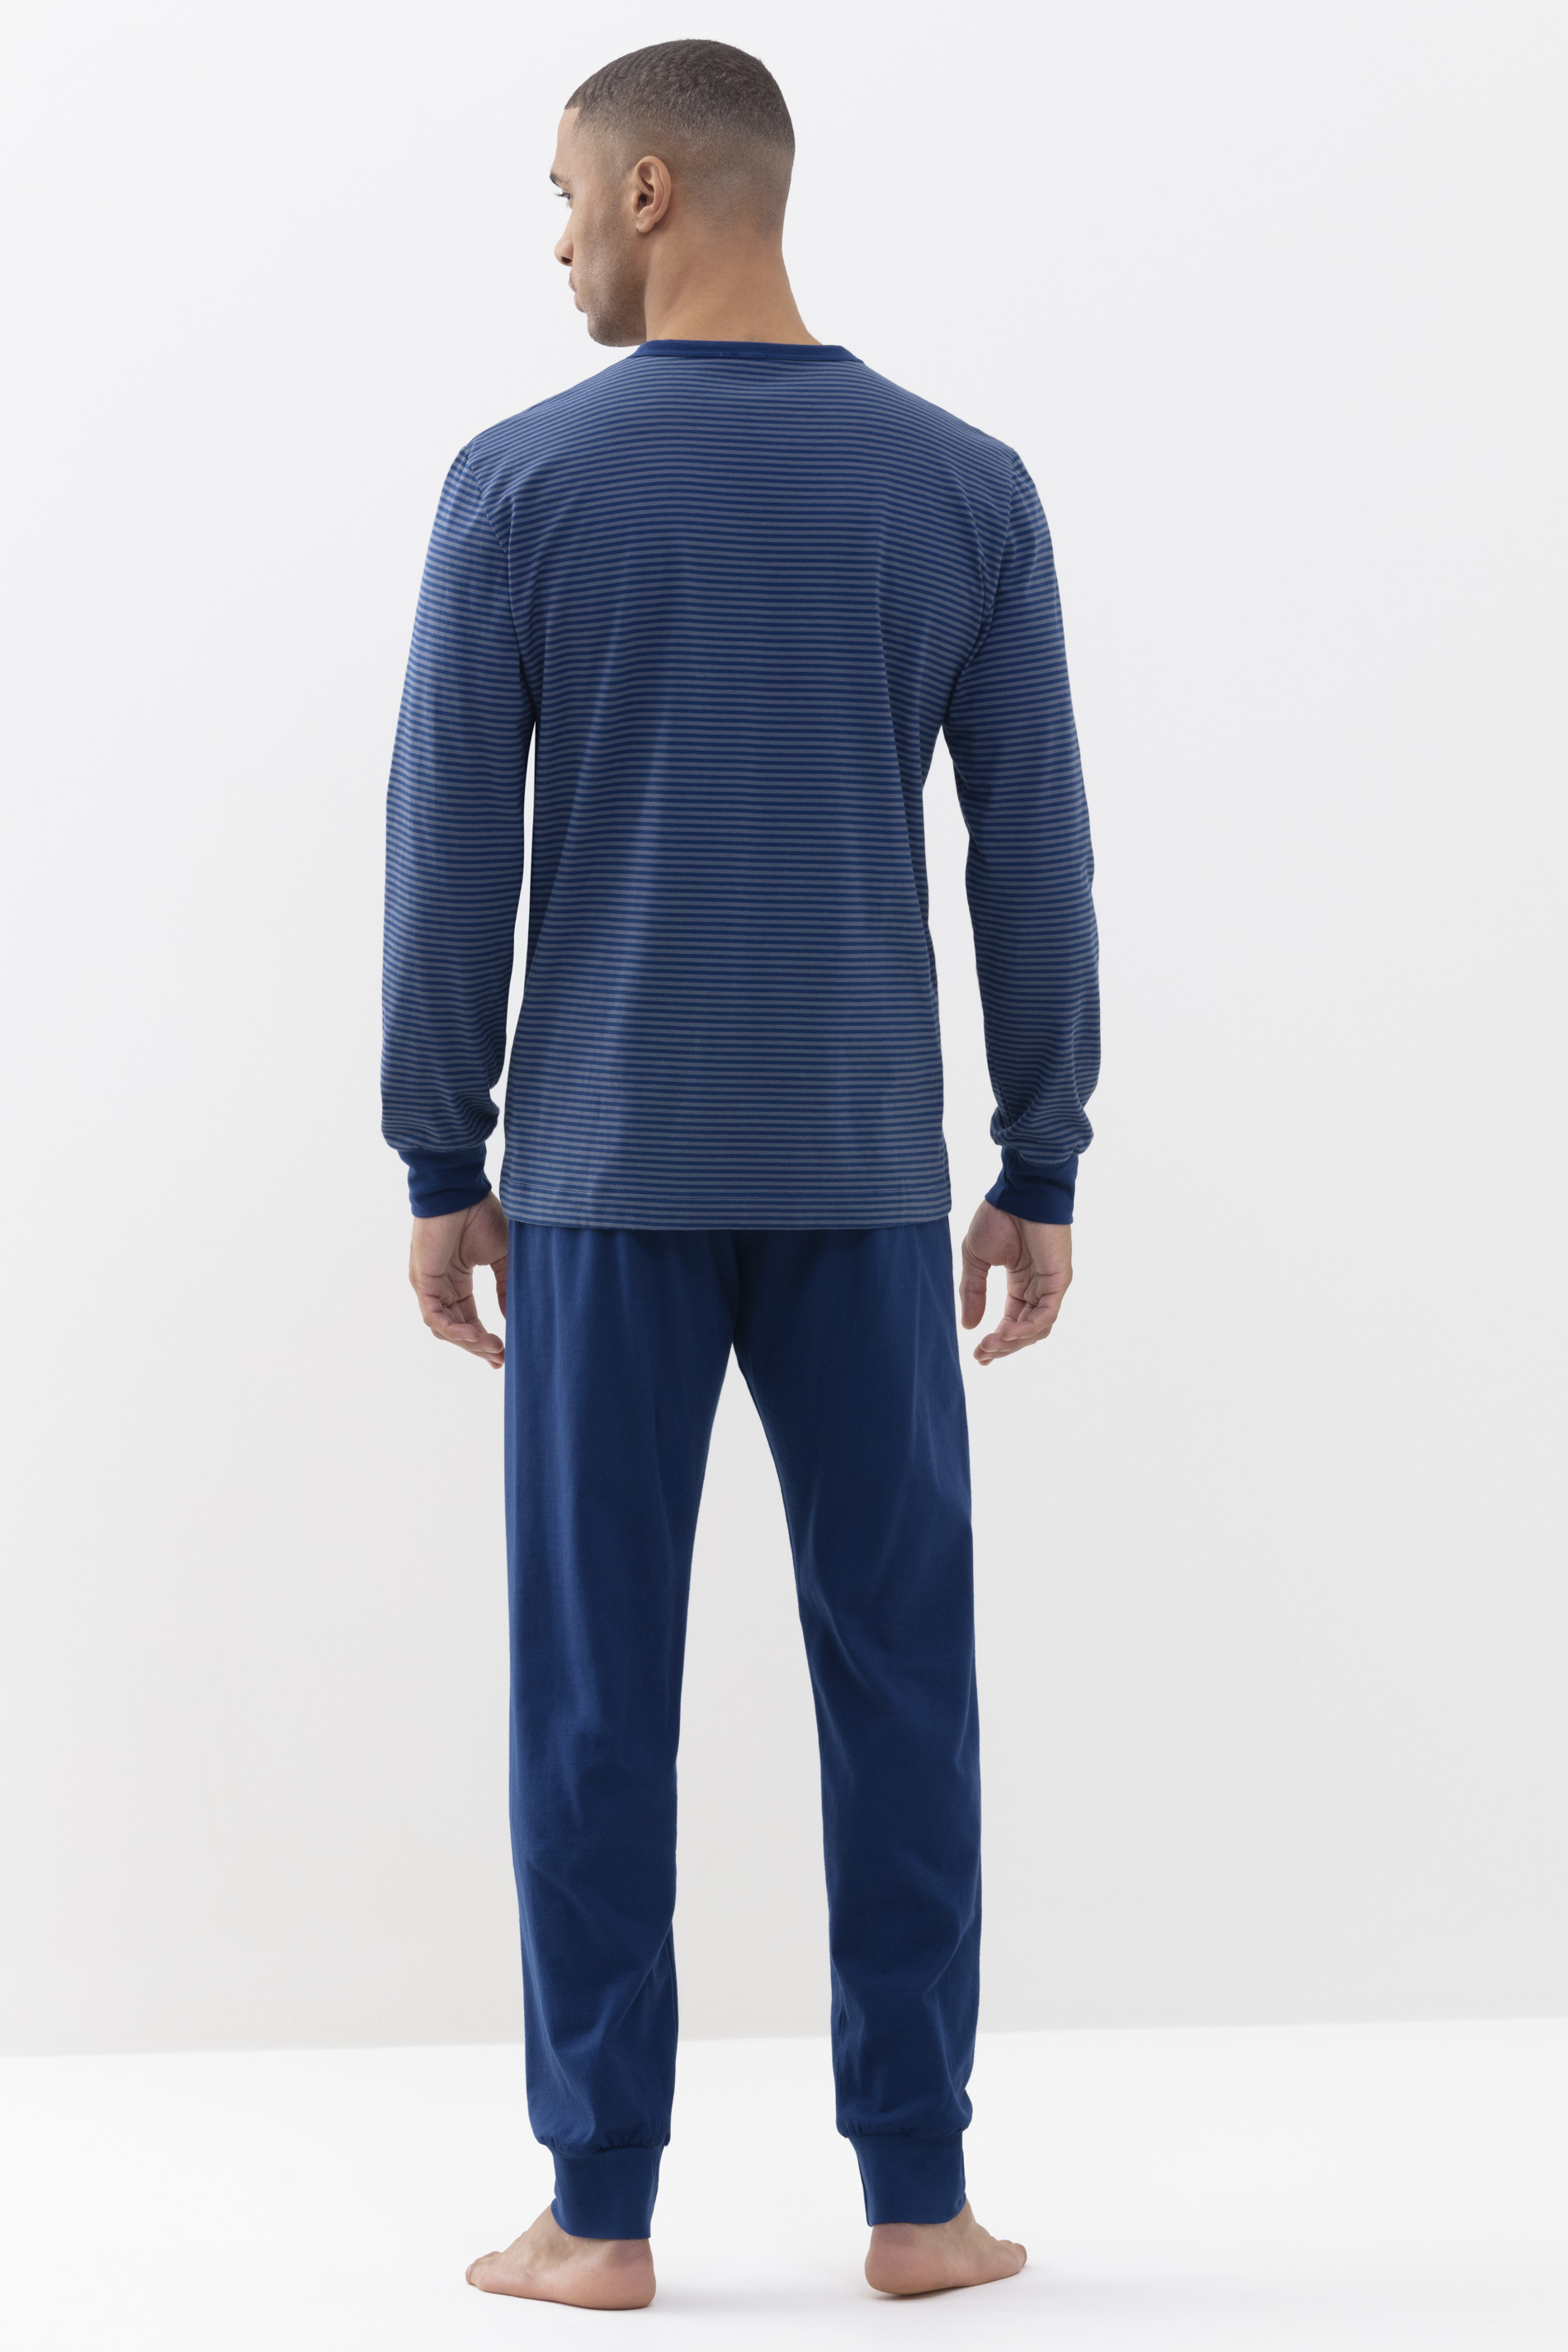 Pyjamas Neptune Serie Cardwell Rear View | mey®